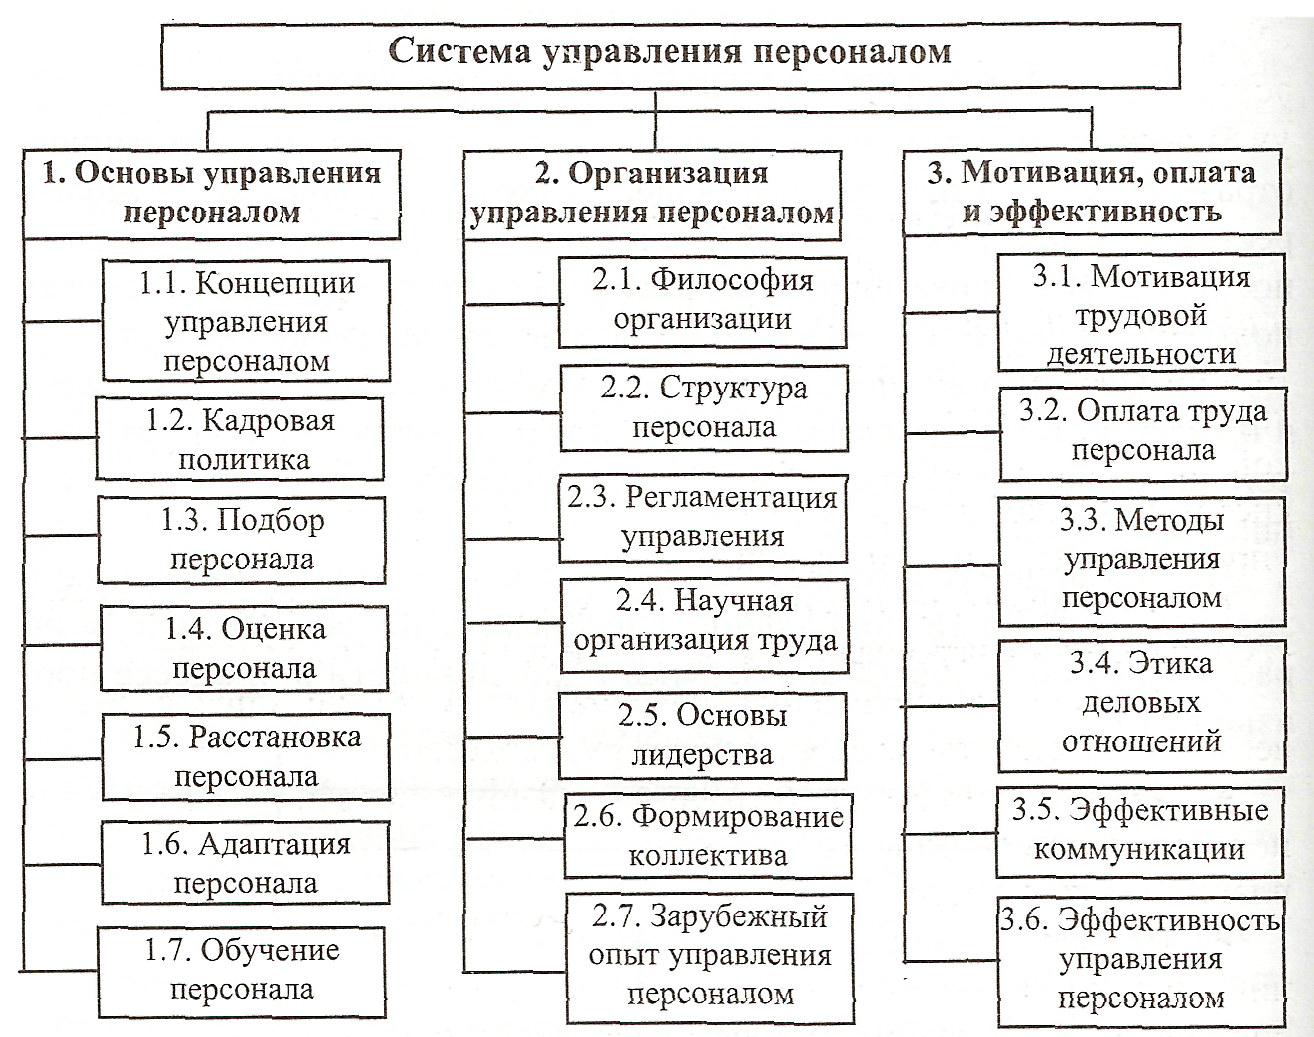 На схеме представлена структура системы управления персоналом